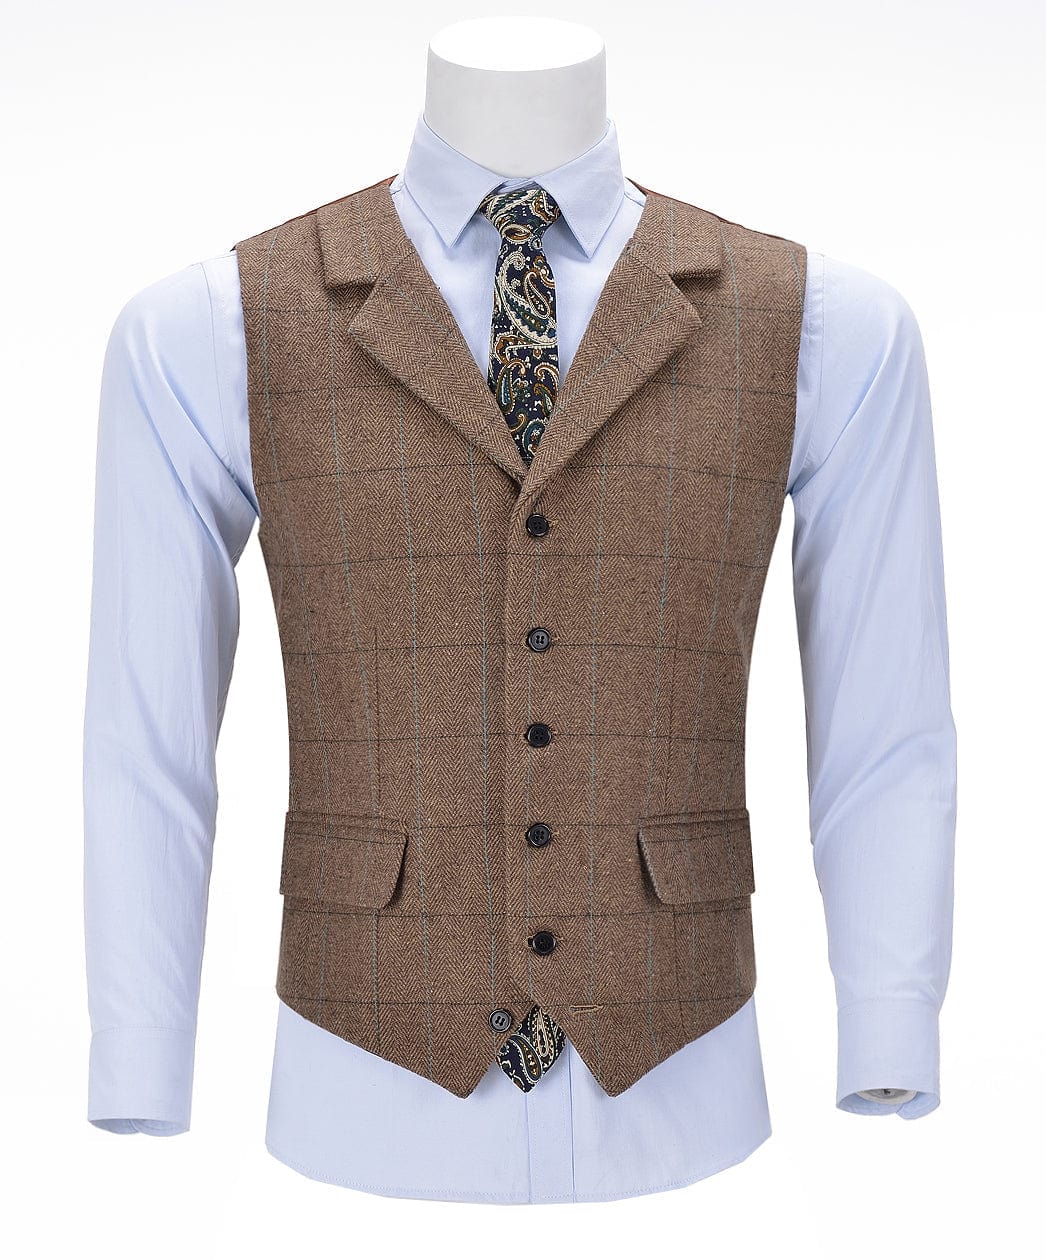 aesido Casual Men's Suit Vest Plaid Notch Lapel Waistcoat